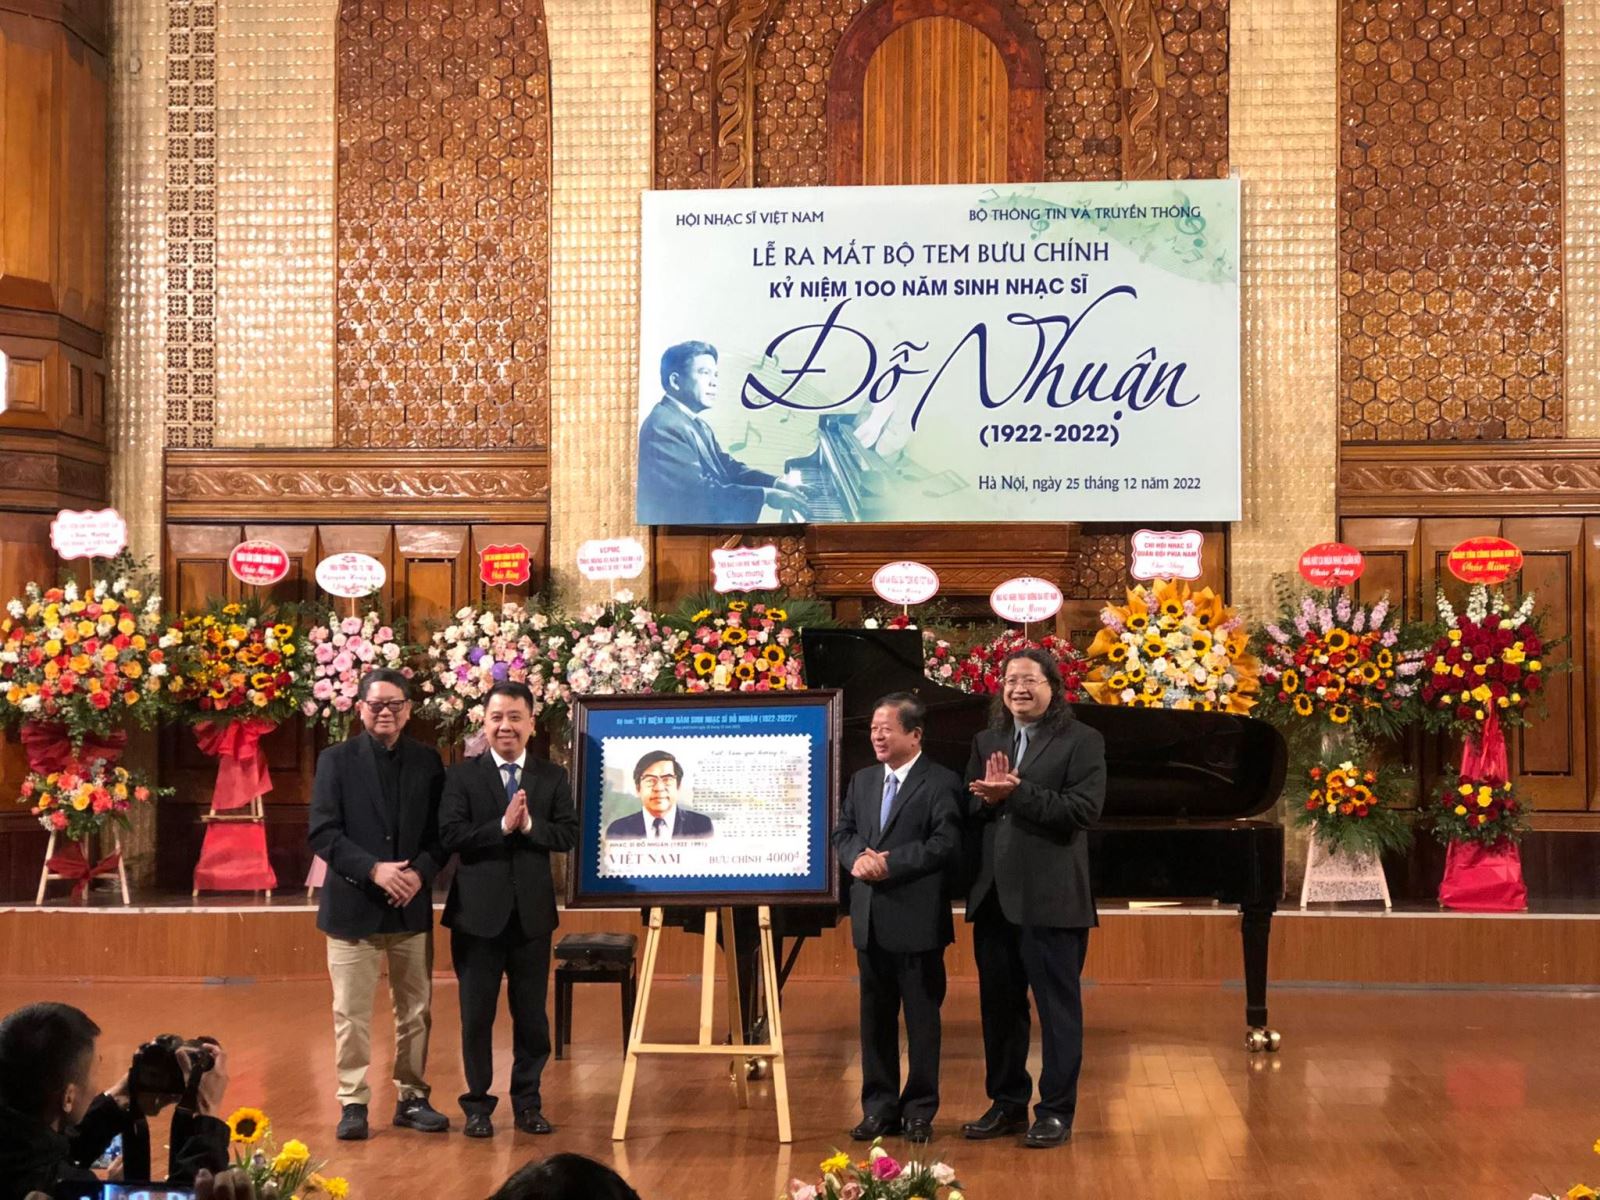 Ra mắt bộ tem Kỷ niệm 100 năm sinh nhạc sĩ Đỗ Nhuận - Ảnh 1.